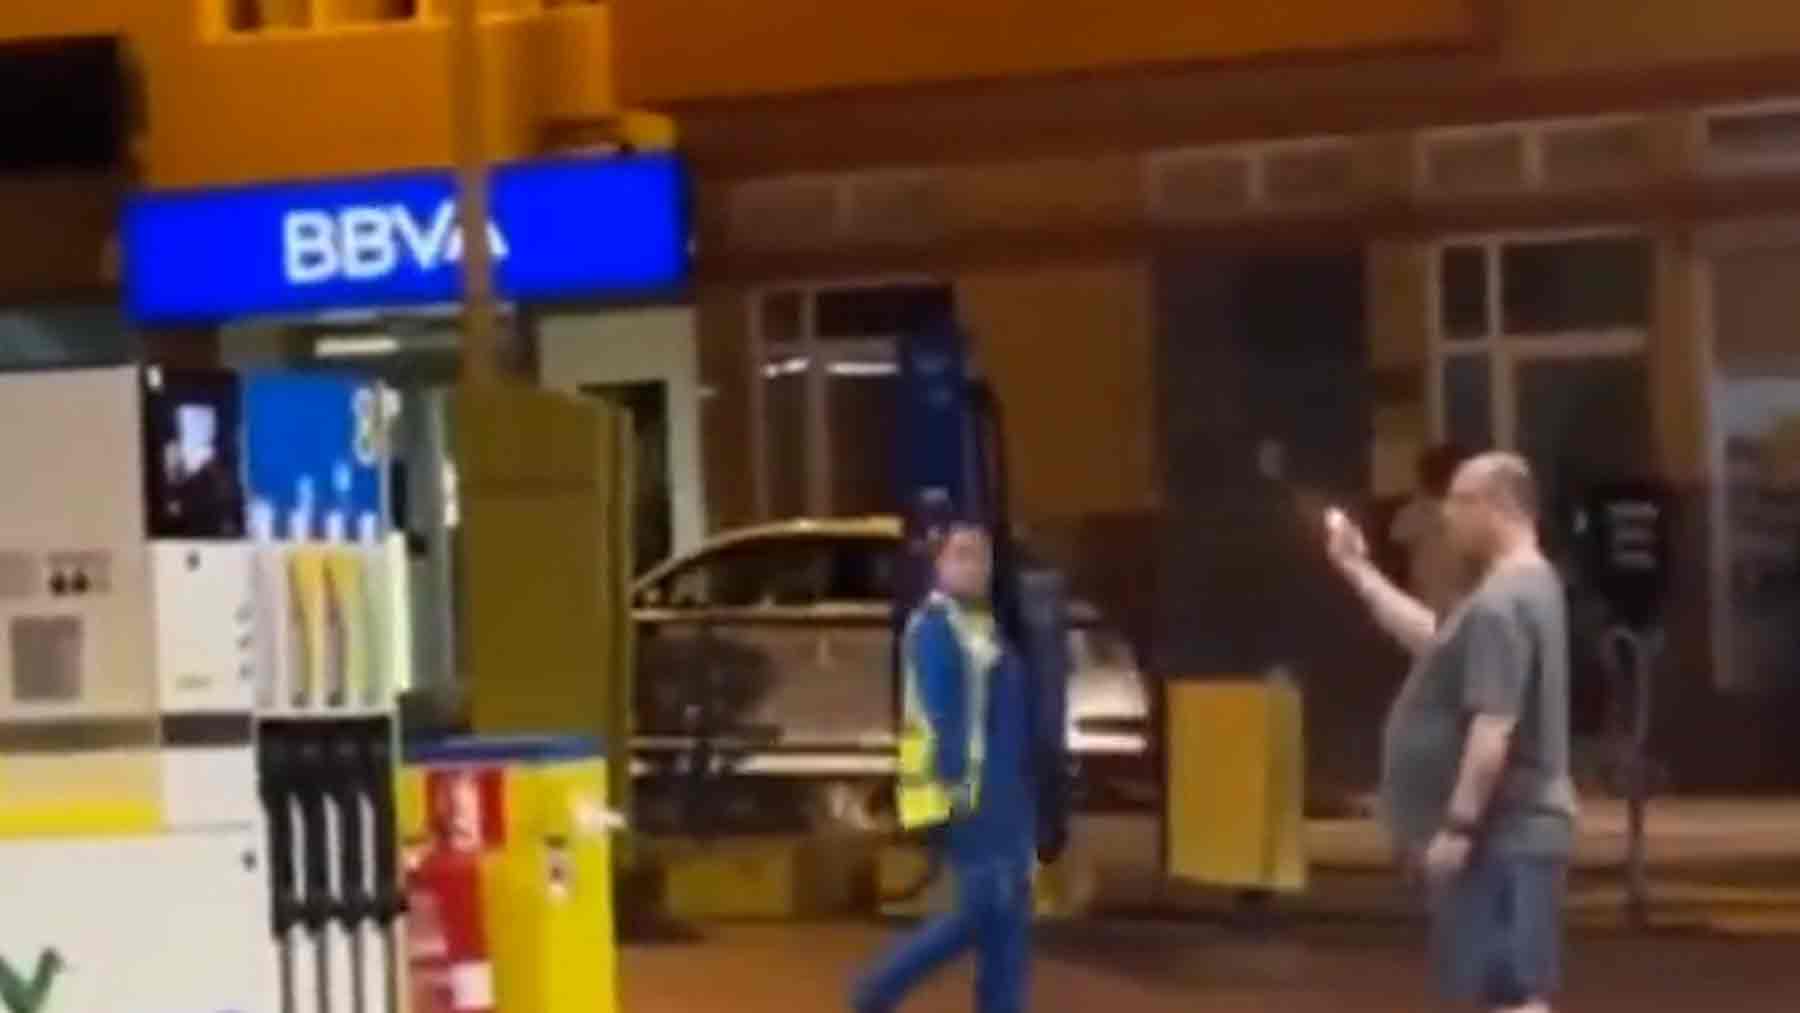 Imágenes del hombre mientras amenazaba con volar la gasolinera en Telde (Canarias).